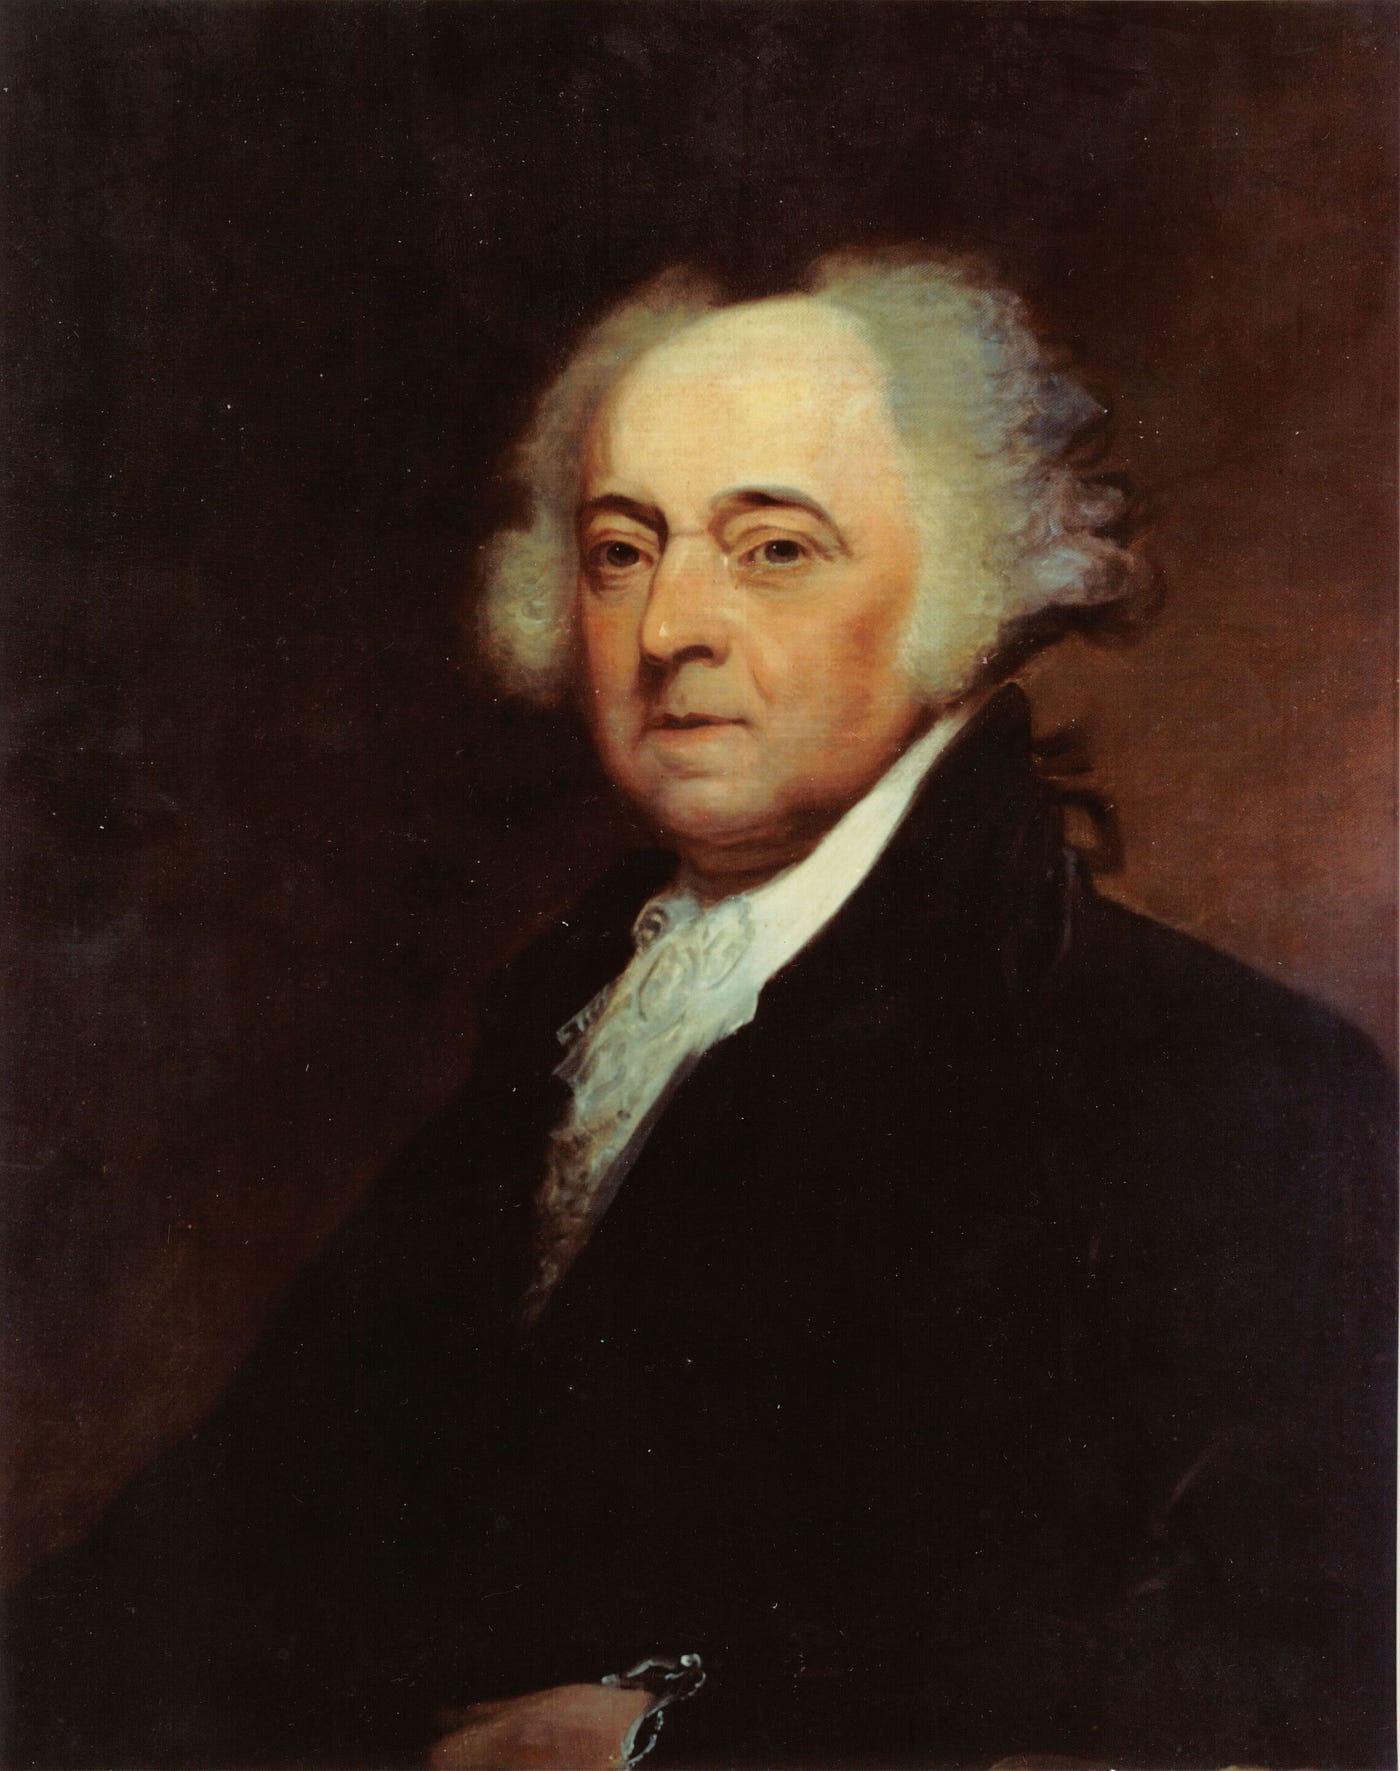 John Adams, segundo presidente de Estados Unidos, autor de la célebre máxima: “Un gobierno de leyes, no de hombres”.